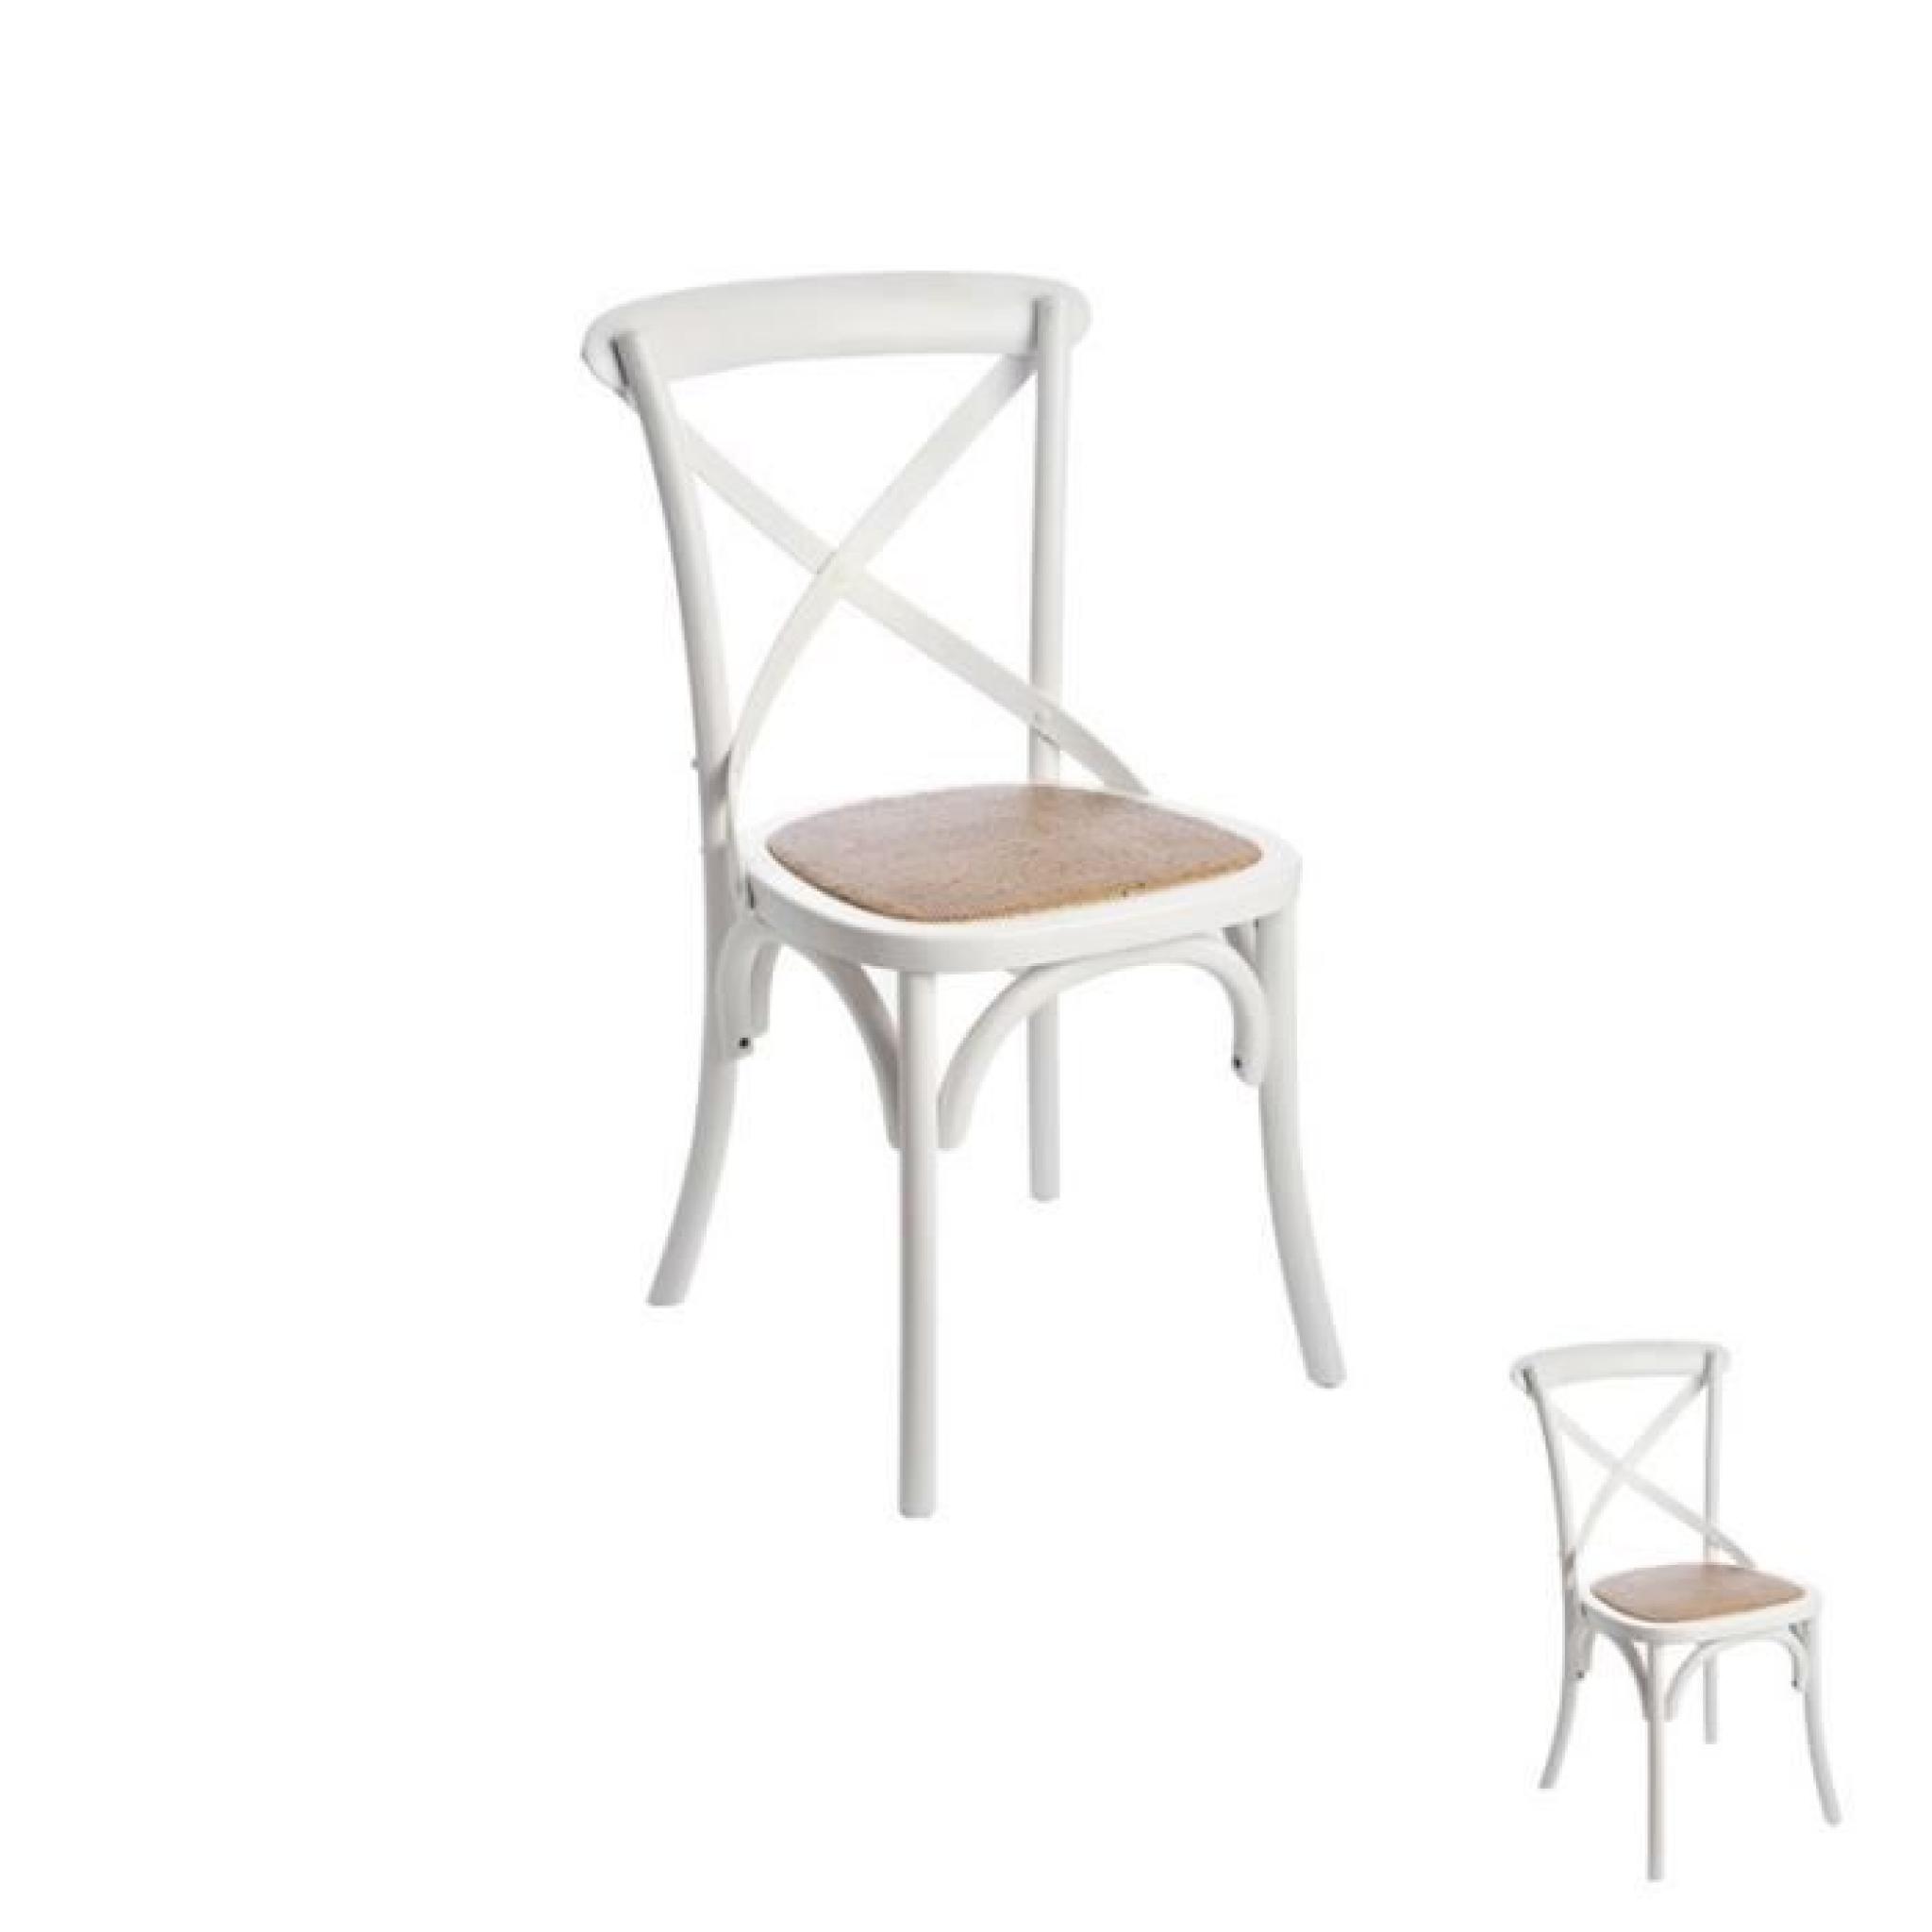 Duo de chaises Blanches - RAPHAELLE  - Taille : L 44 x l 43 x H 89 - Couleur marketing : Blanc